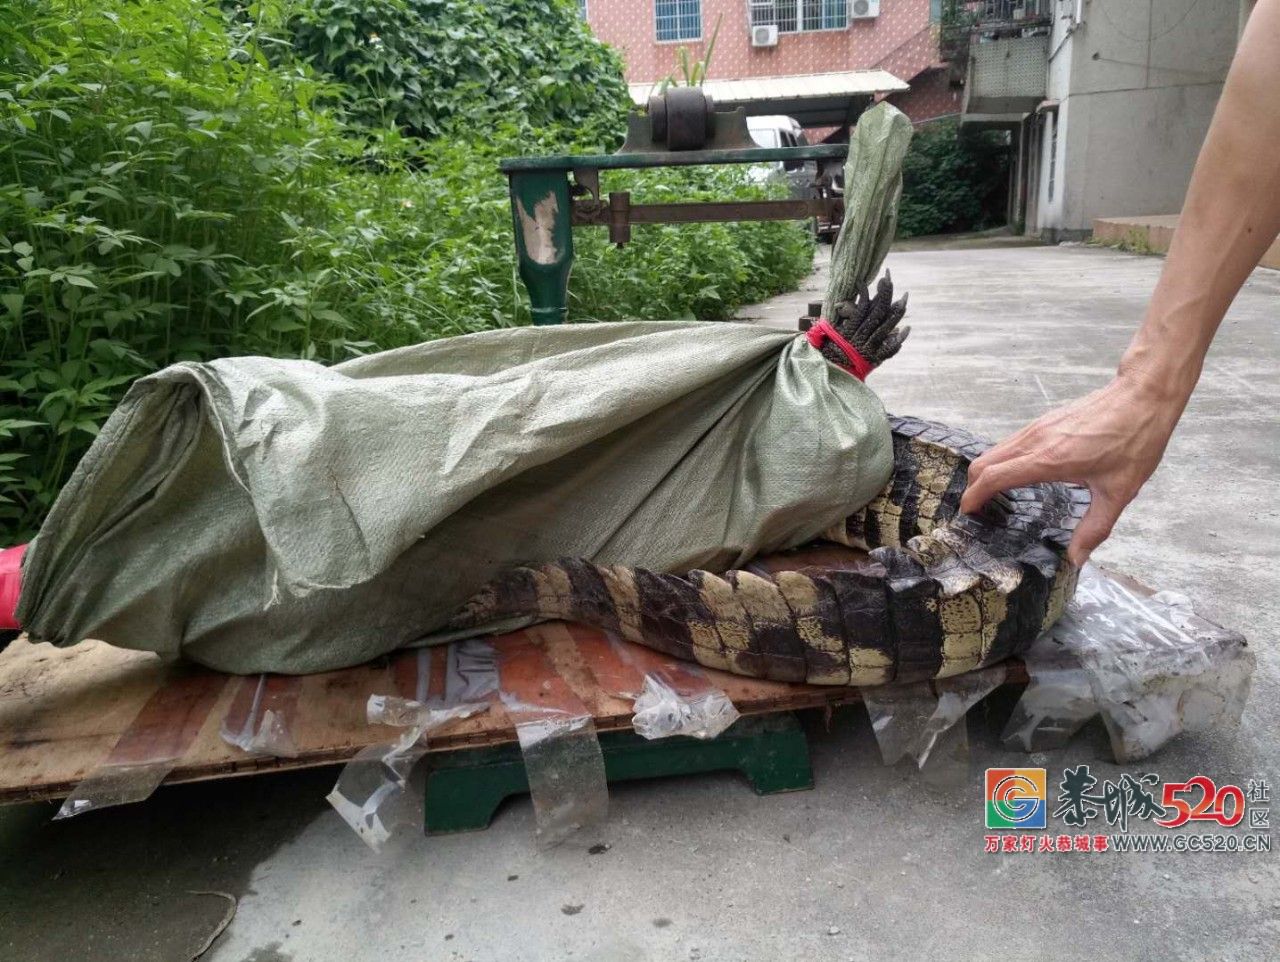 广州流溪河抓到一条2米长的鳄鱼！是真的！不能吃！506 / 作者:狗婆蛇 / 帖子ID:263157